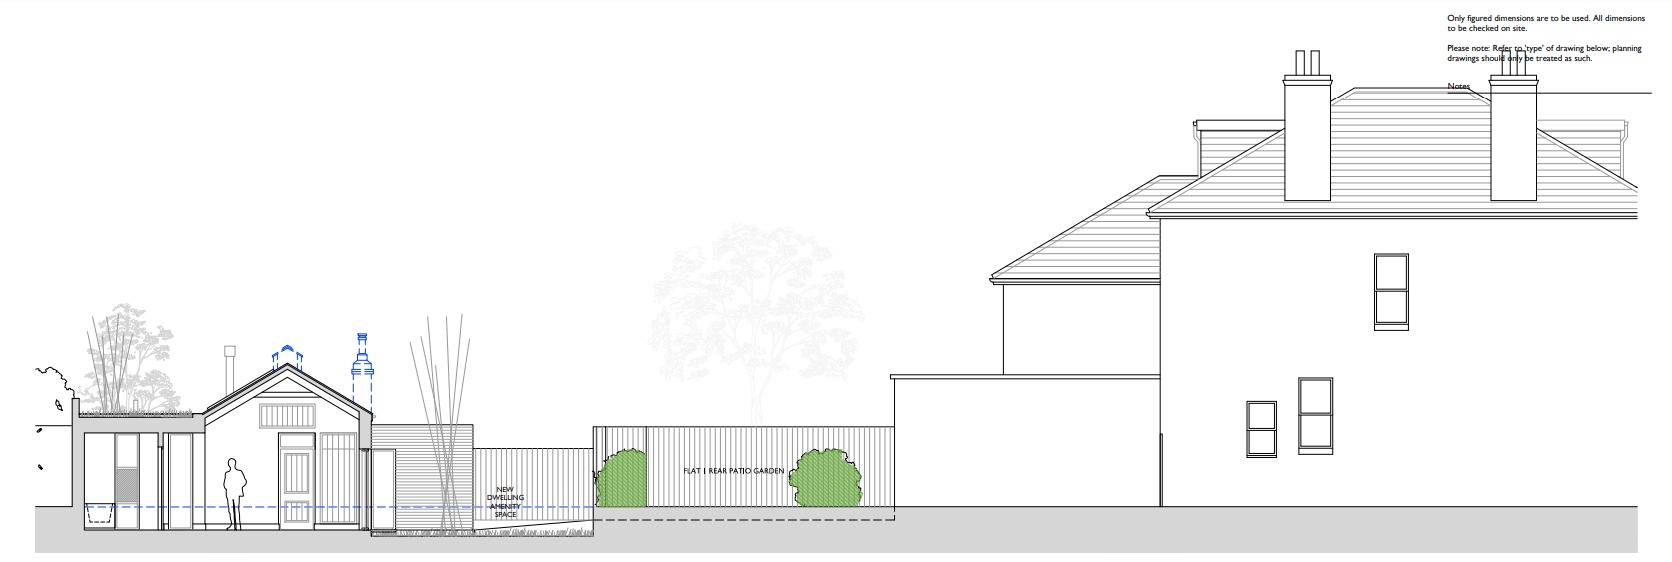 Plans to build home in Hove Villas garden